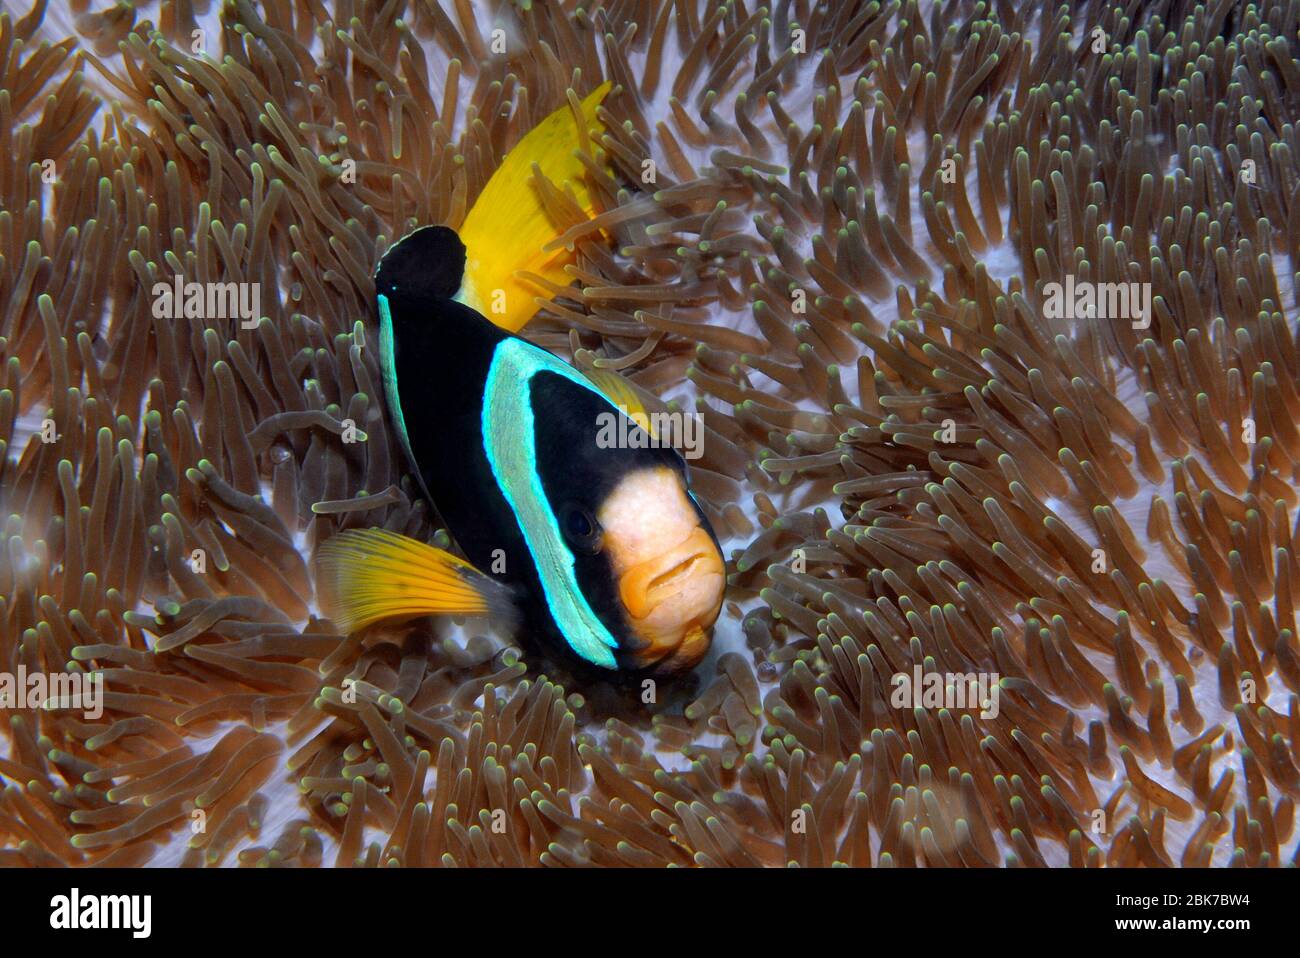 Clarks Anemonenfisch (Amphiprion clarki), Indischer Ozean Foto Stock